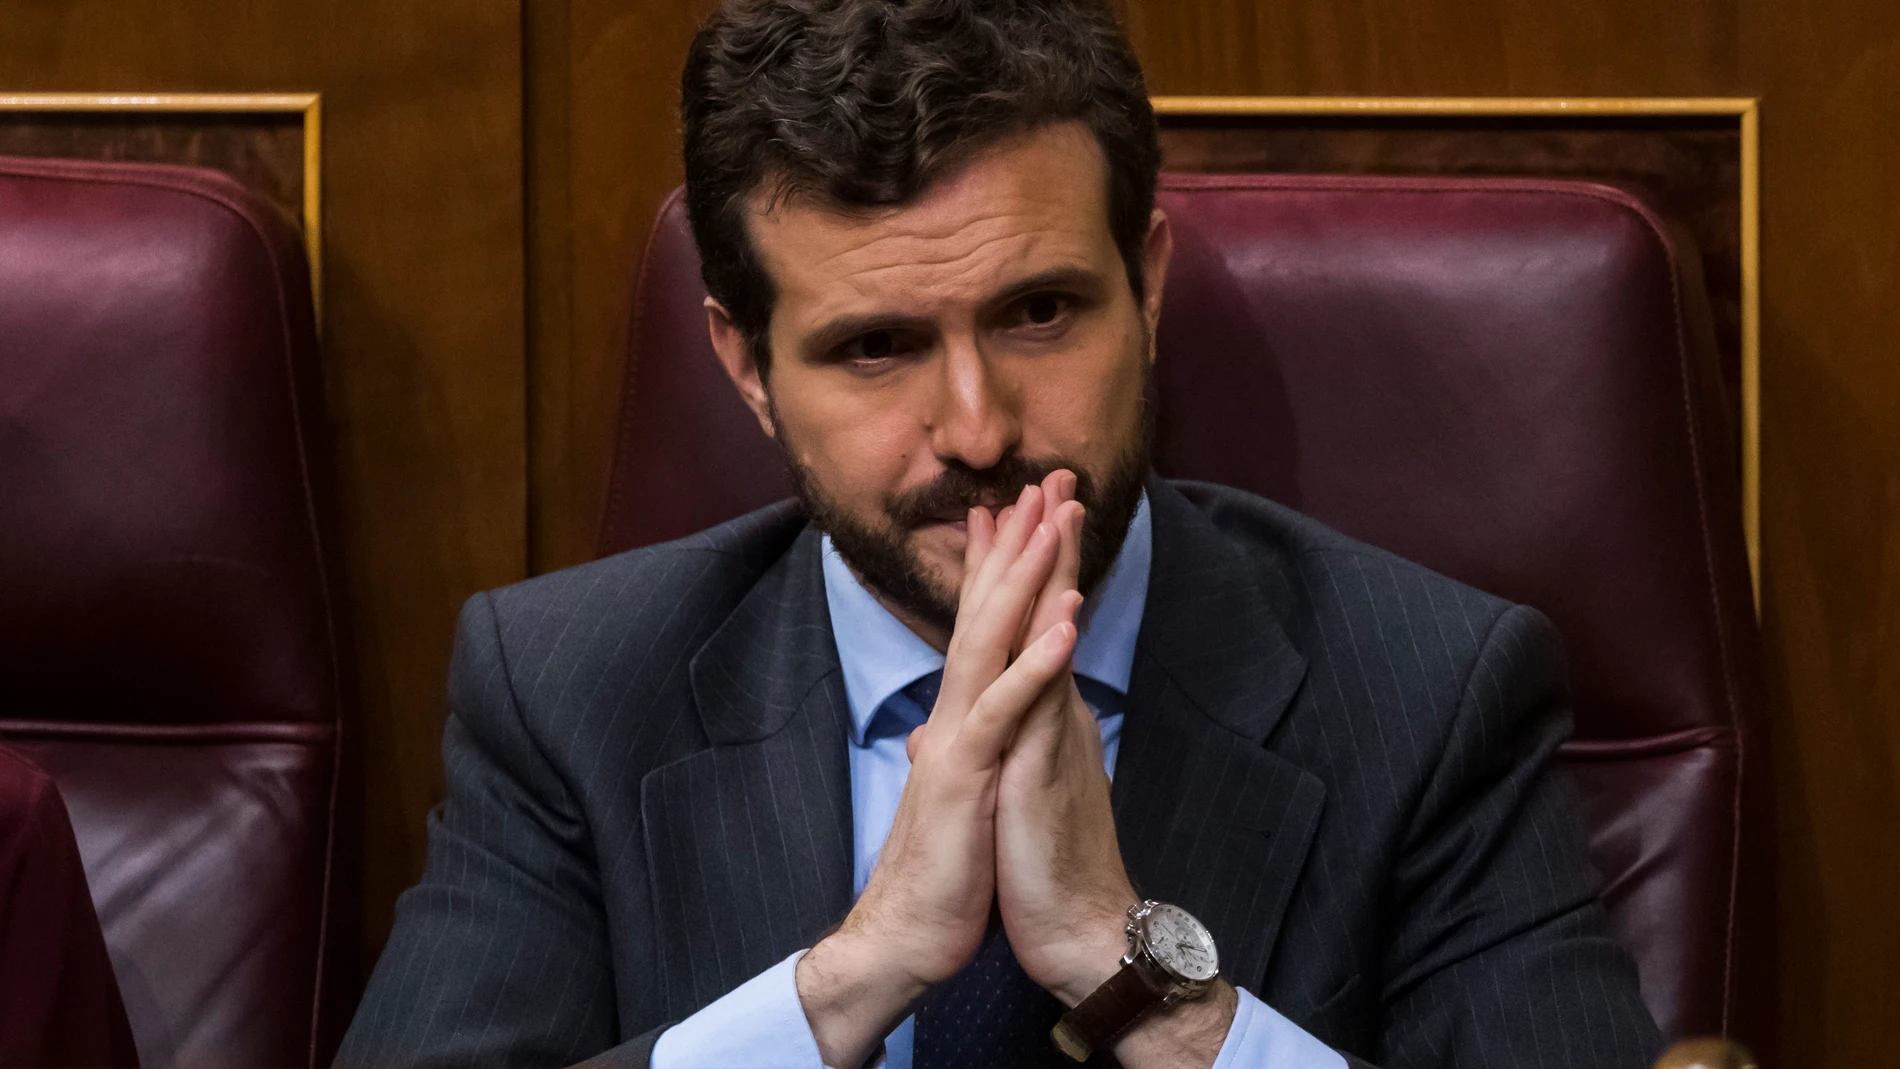 Pablo Casado muestra su preocupación ayer en el Congreso ante los insultos de Bildu al Jefe del Estado / Alberto R. Roldán